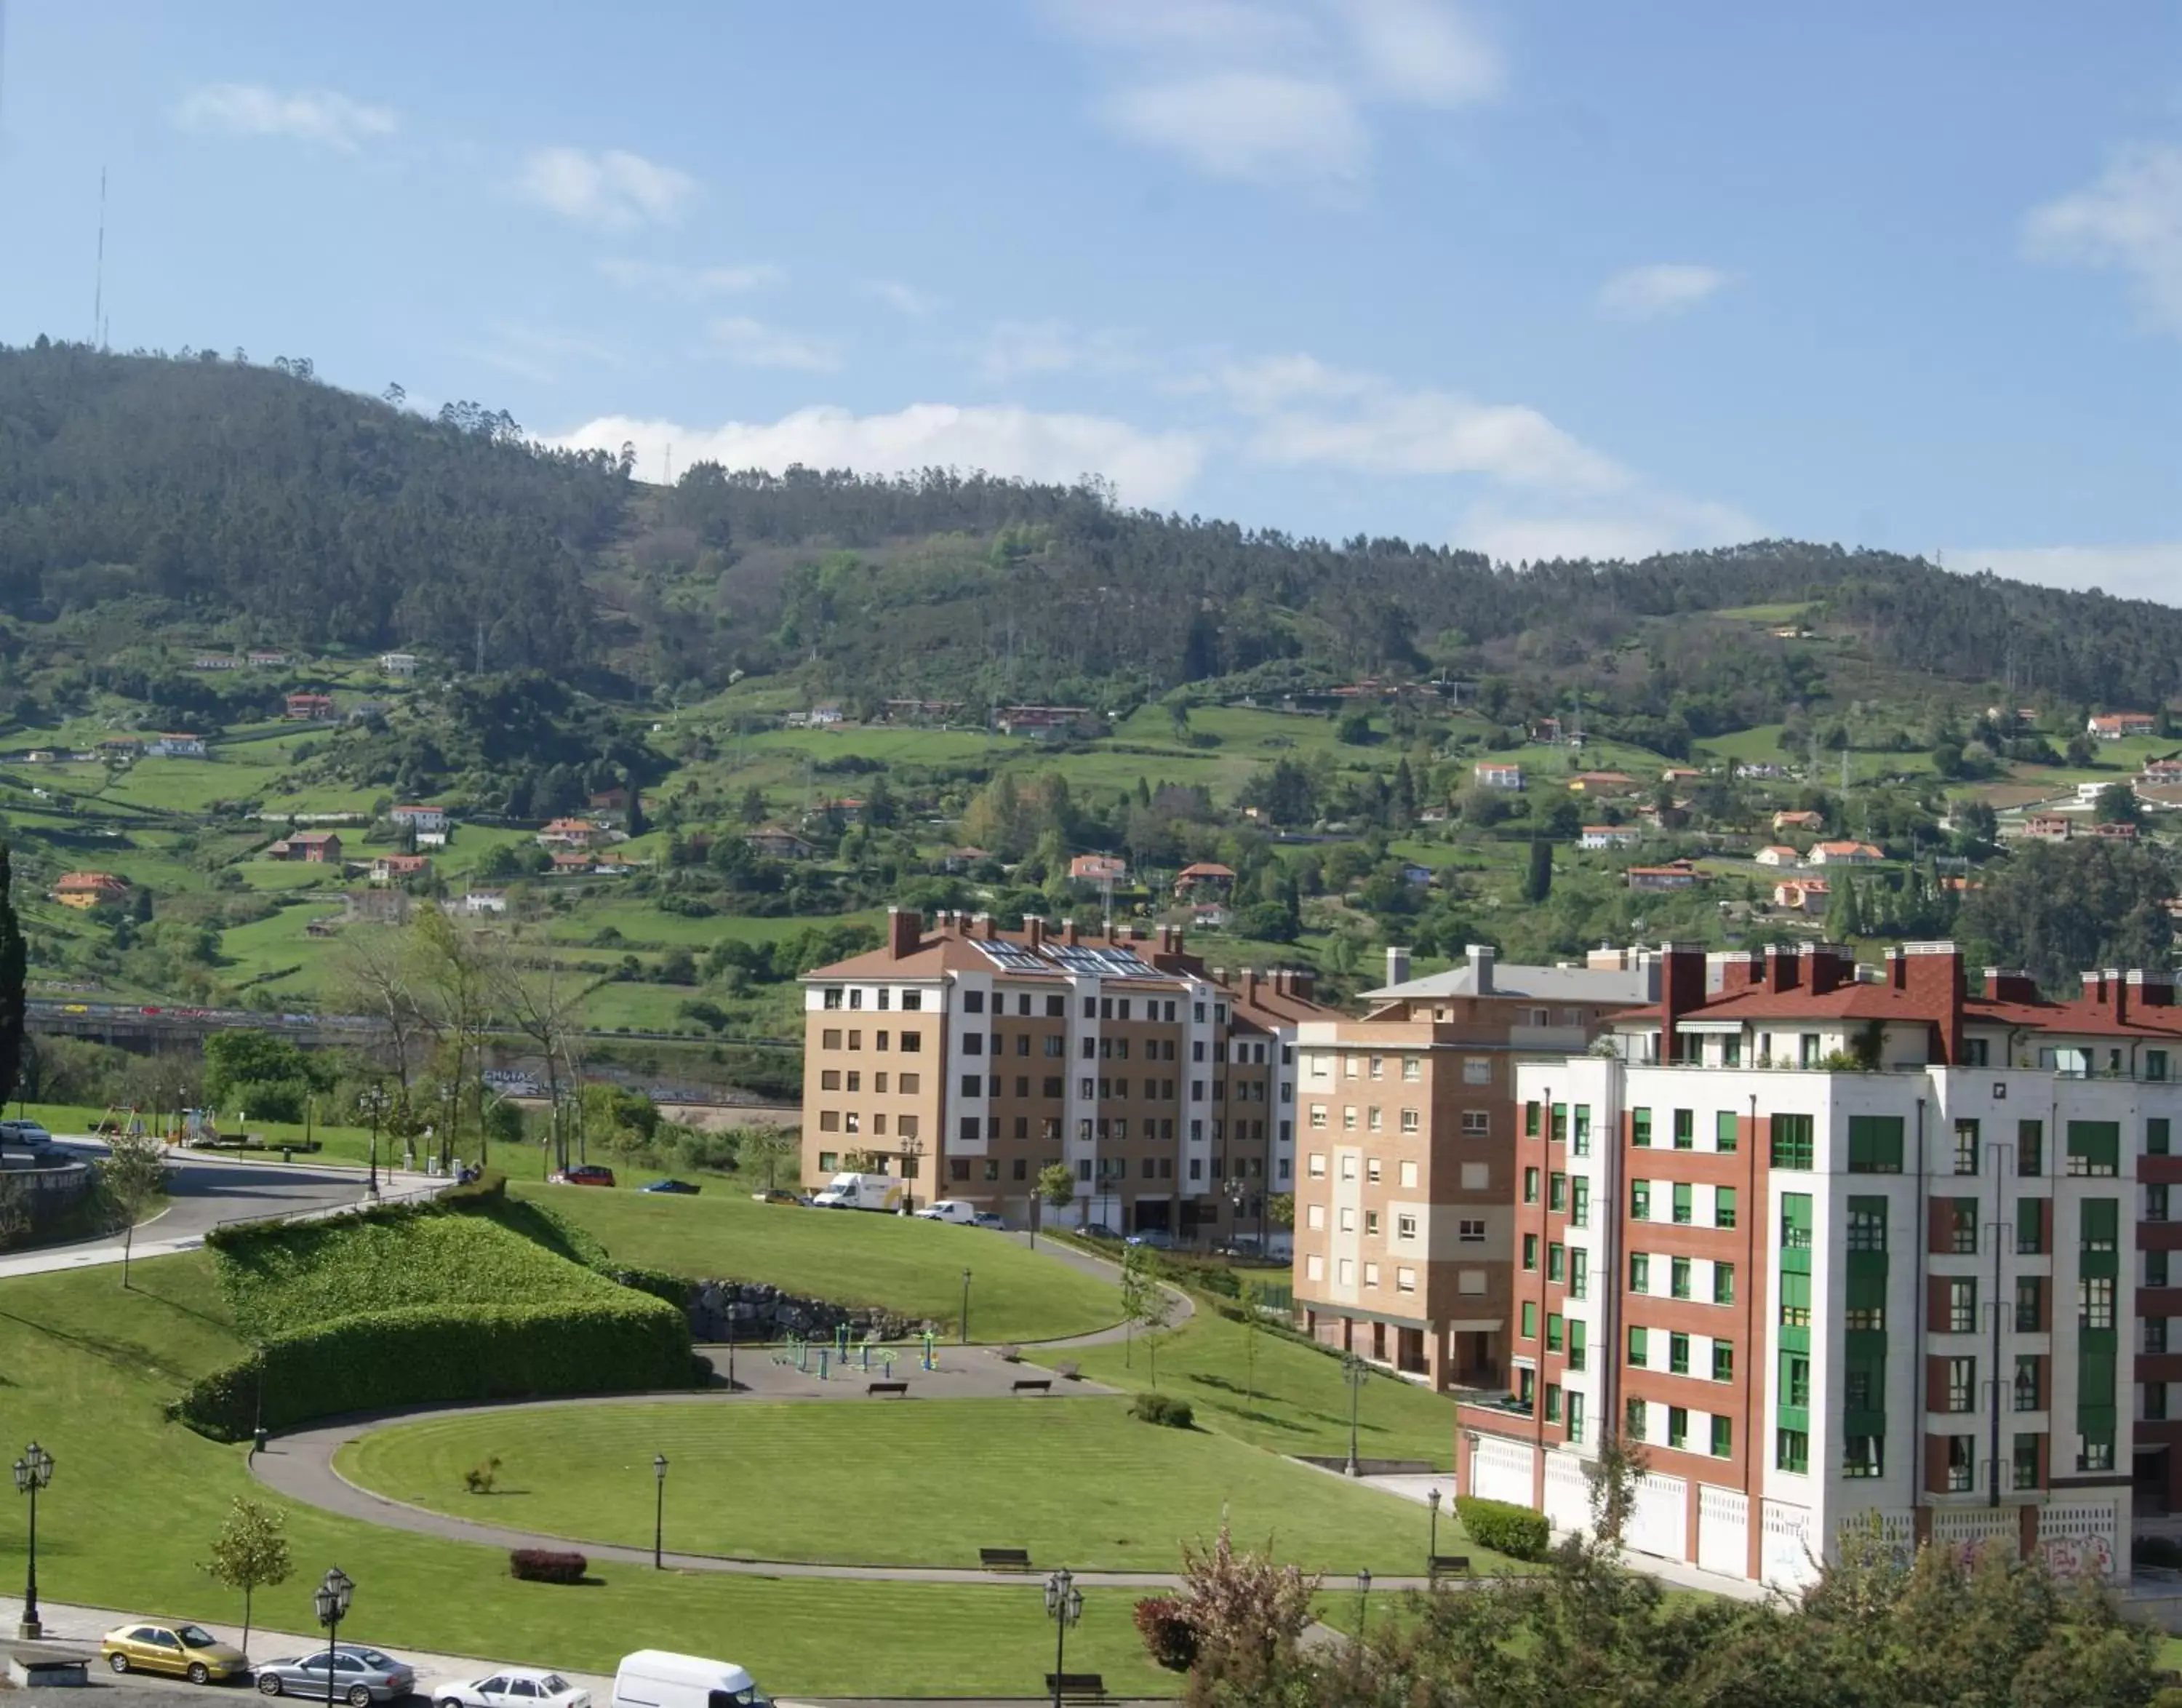 Area and facilities in El Retiro de Cardea